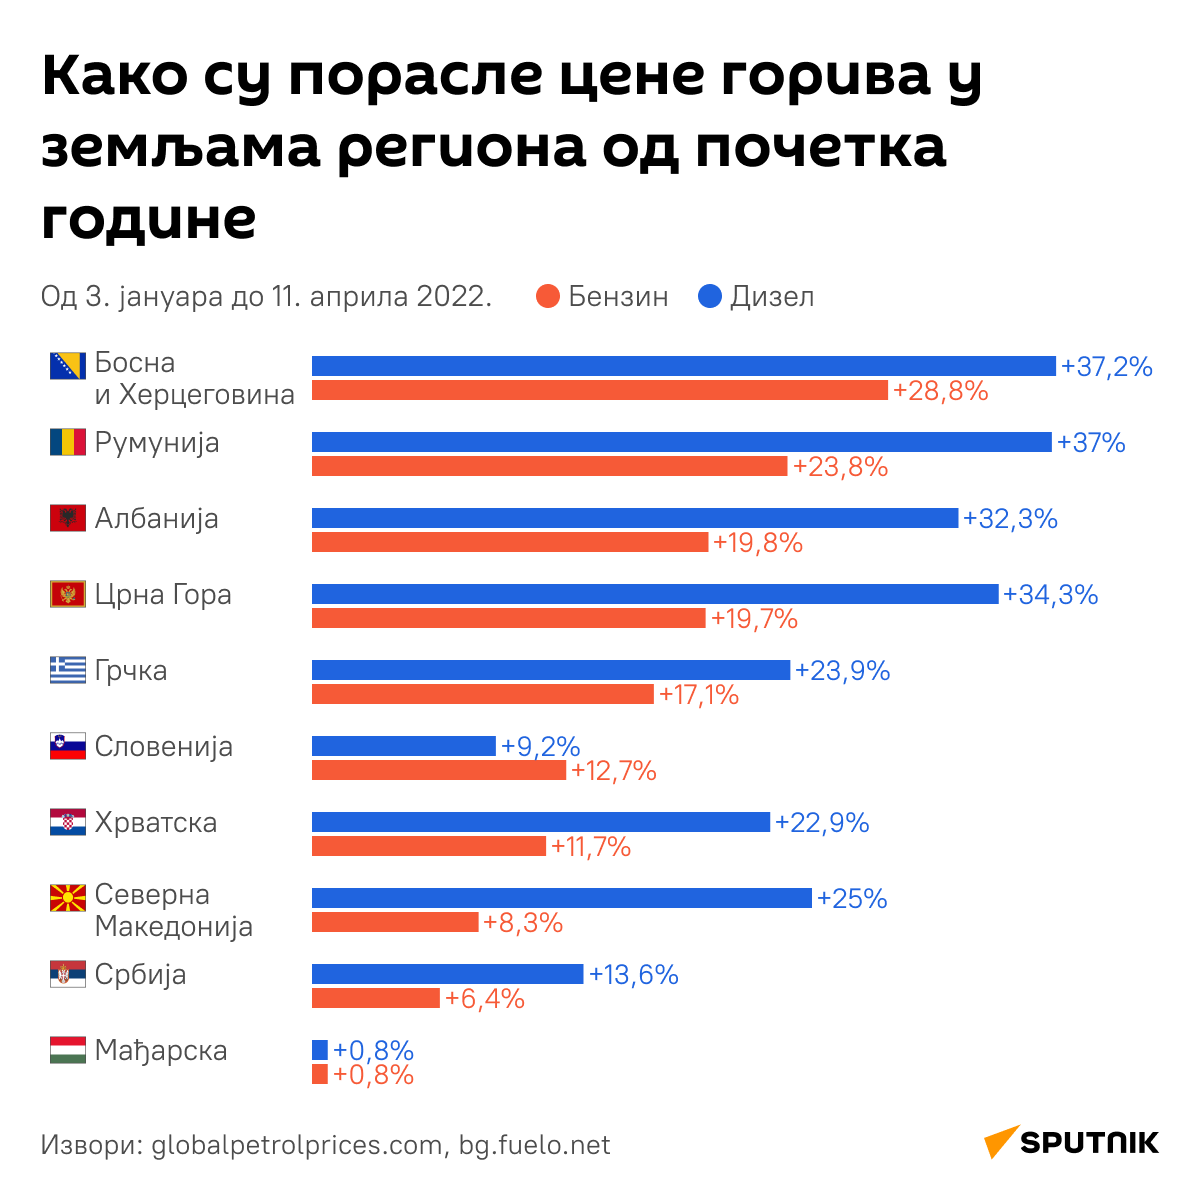 Пораст цена горива - инфографика ћИРИЛИЦА деск - Sputnik Србија